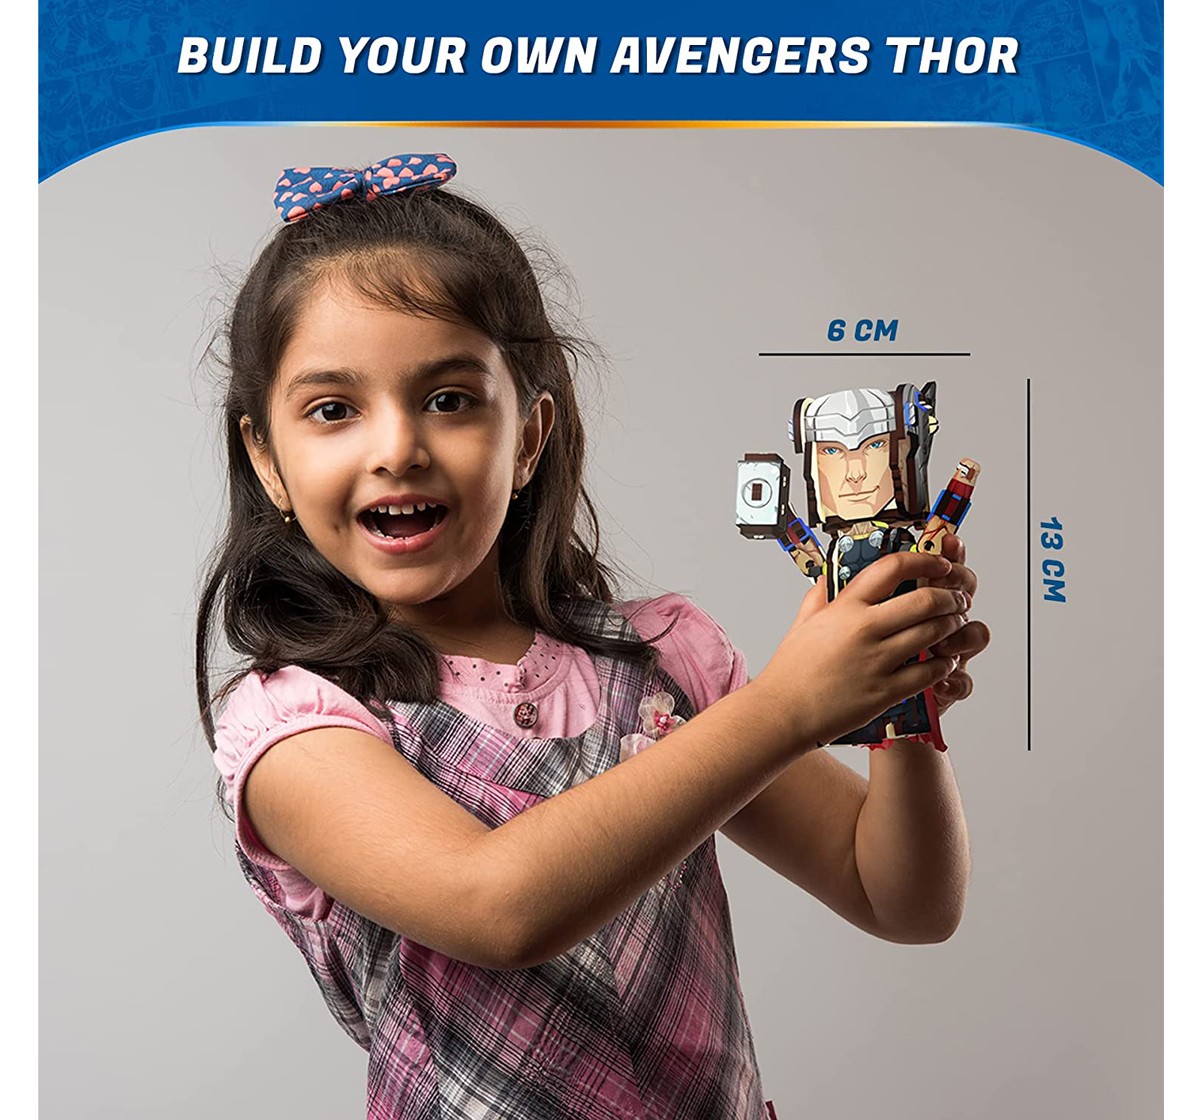 Skillmatics Buildables Marvel Thor Multicolor 8Y+